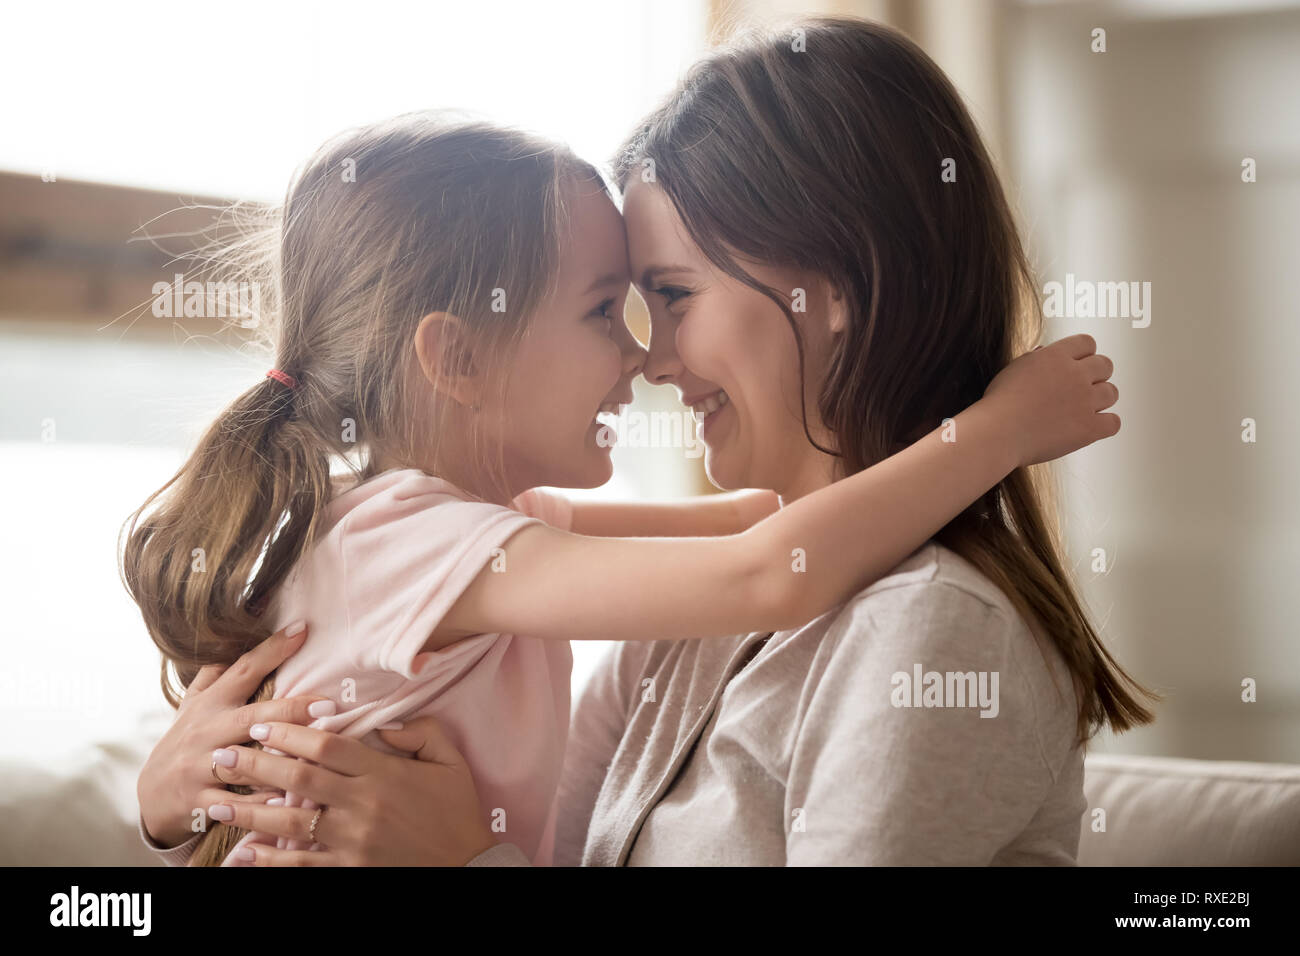 Carino kid ragazza sorridente che abbraccia la mamma toccando nasi avente fun Foto Stock